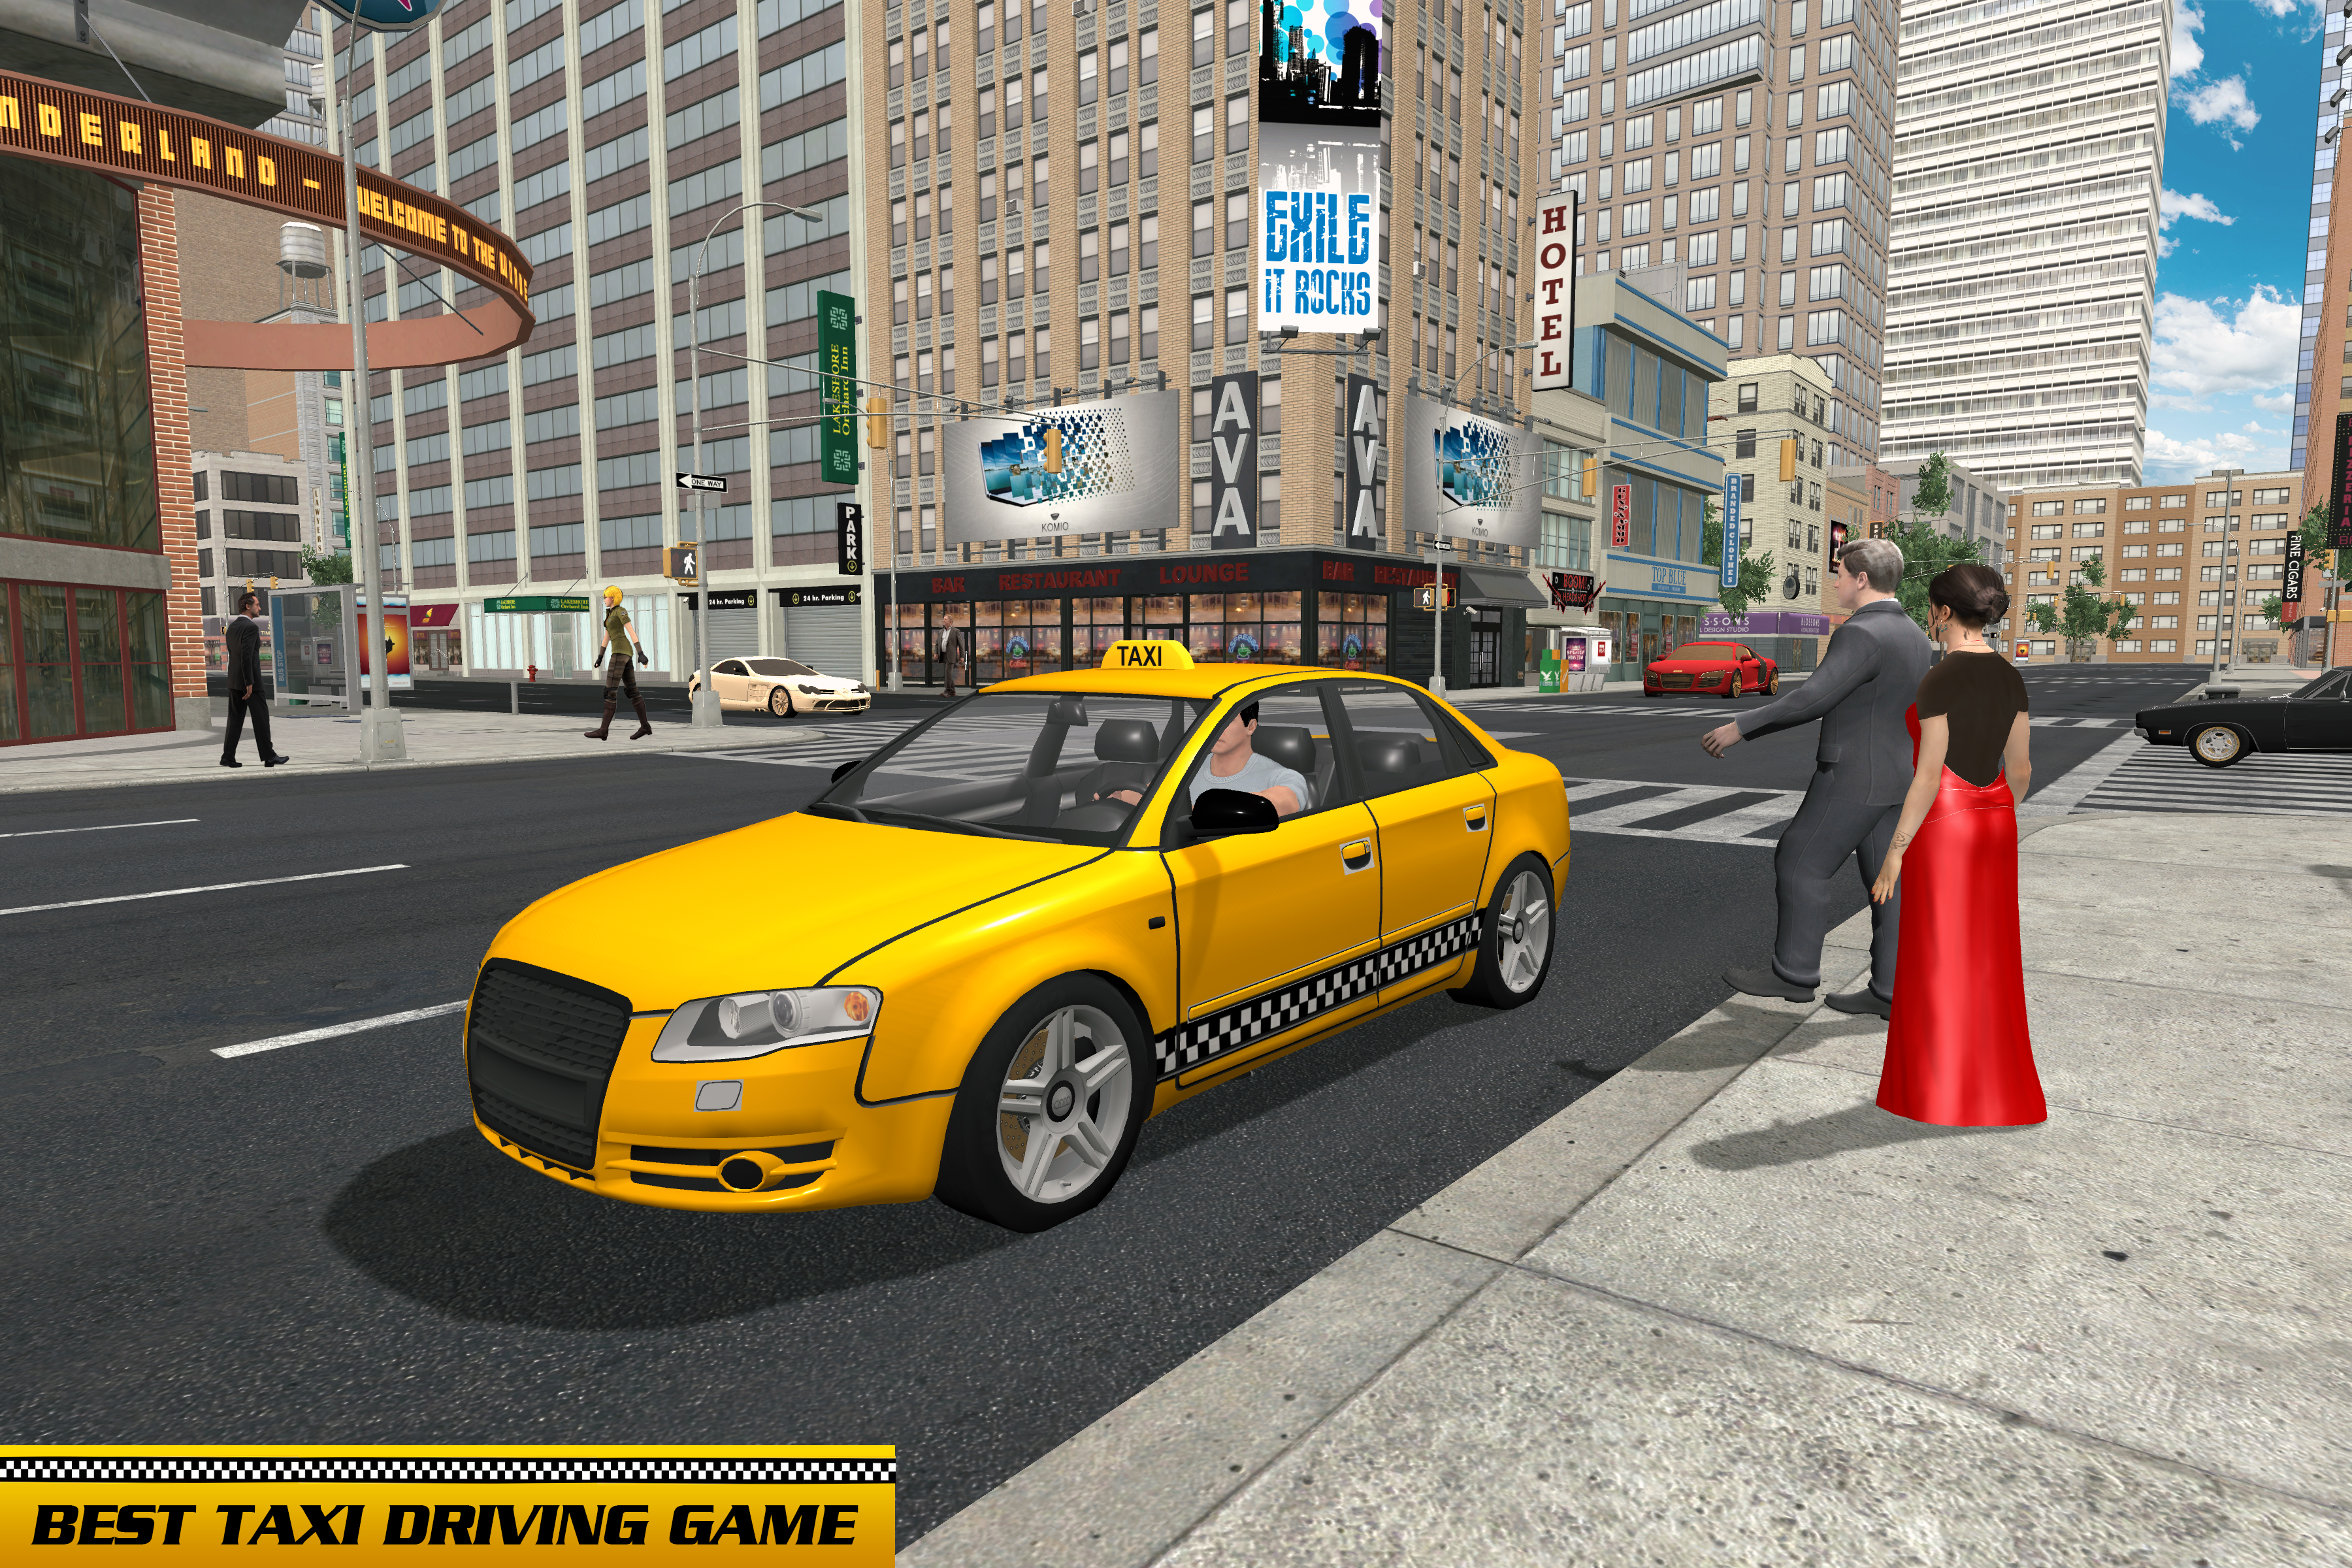 Screenshot 1 of टैक्सी ड्राइवर कार गेम्स: टैक्सी गेम्स 2019 16